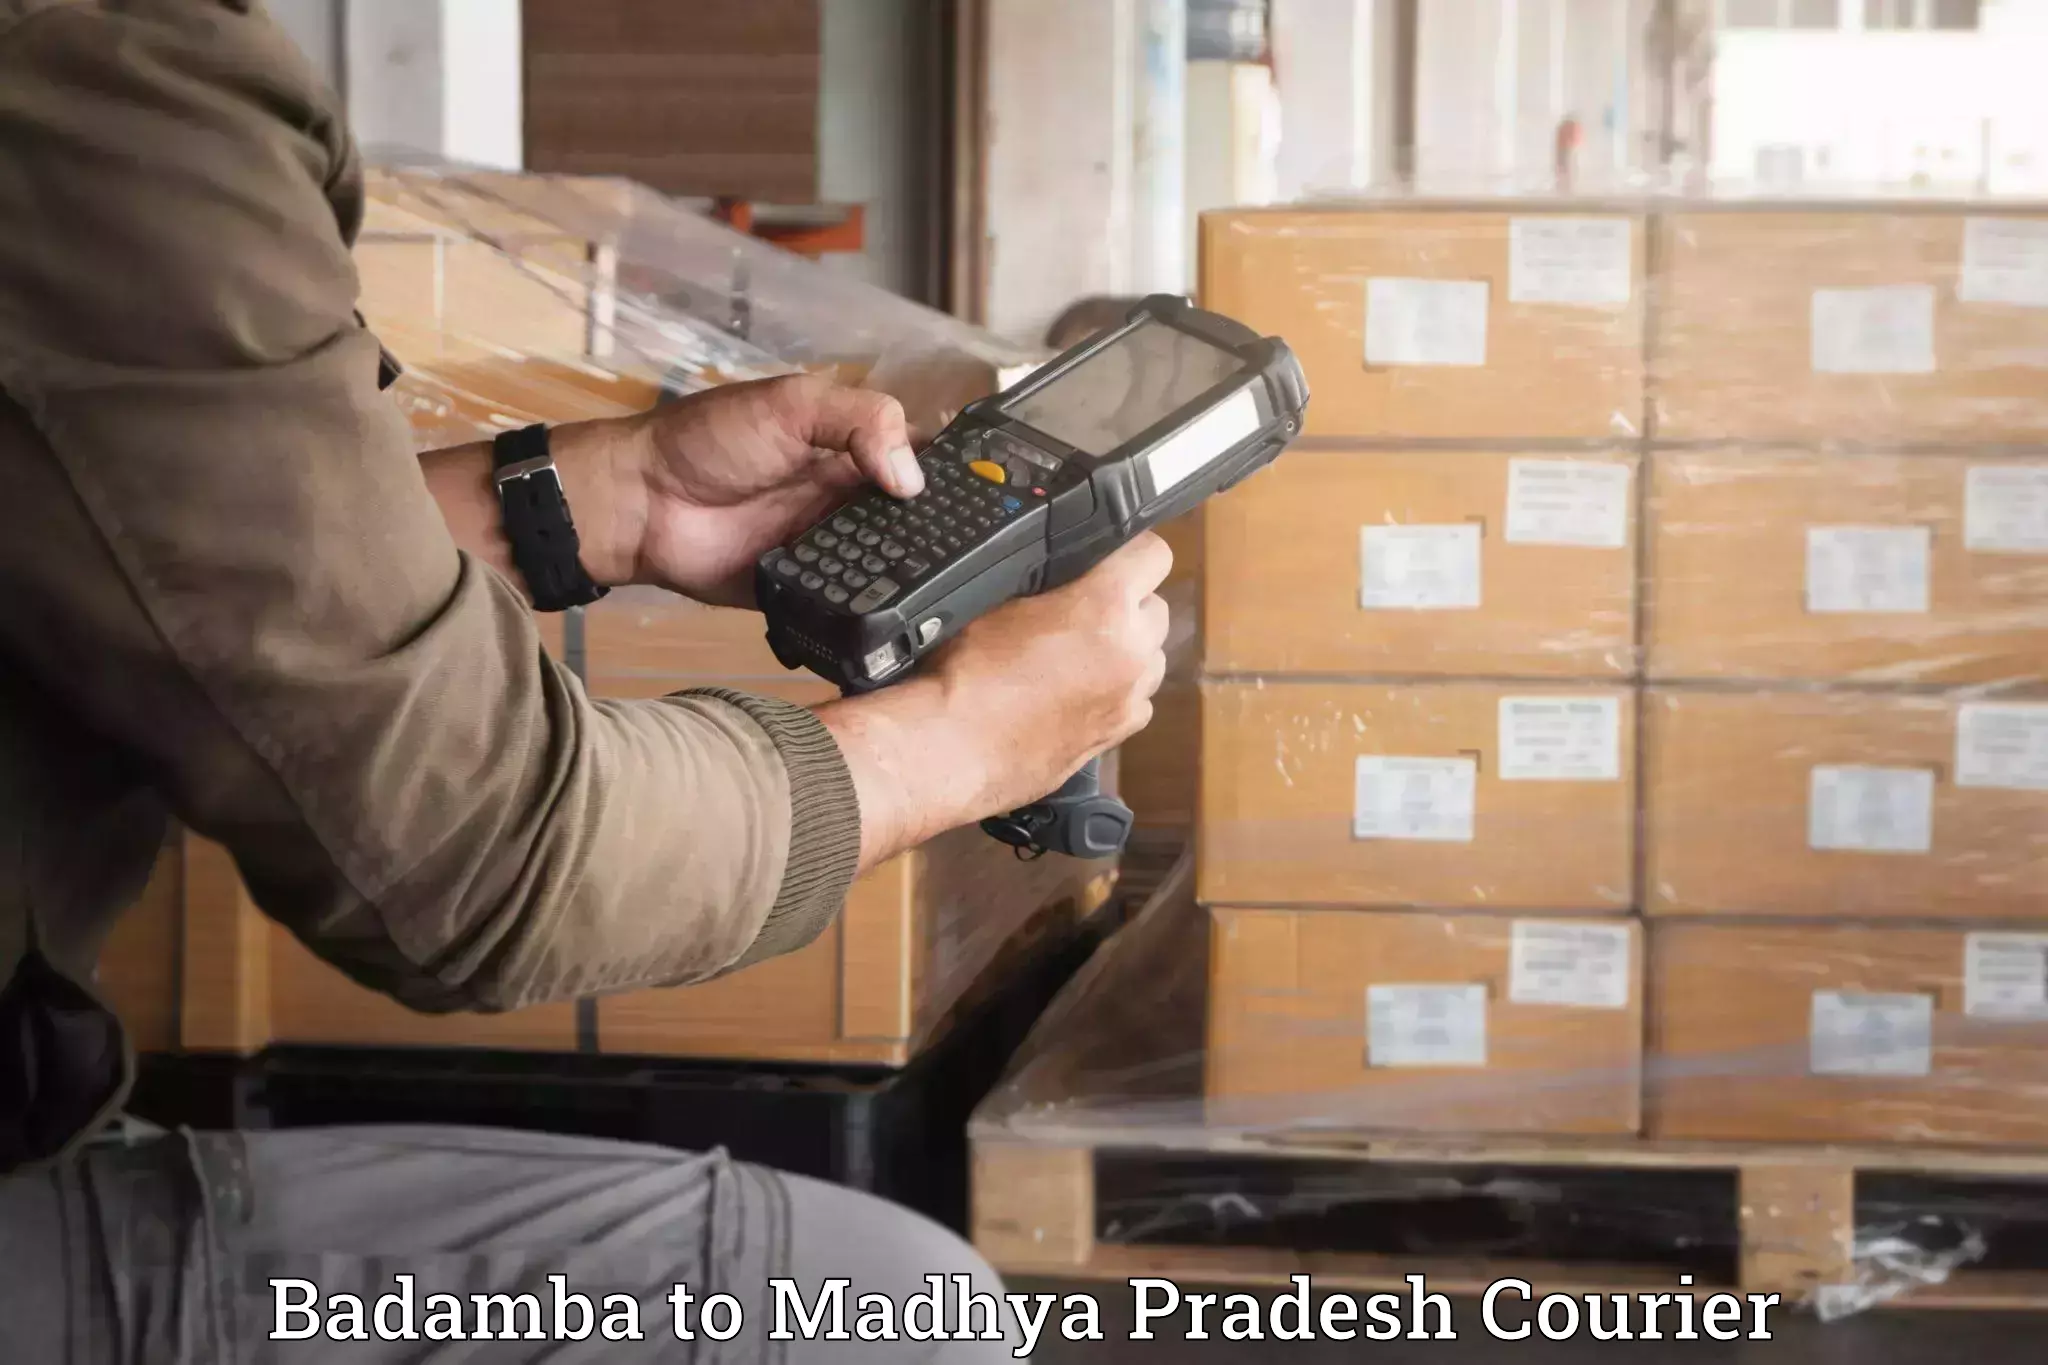 Efficient household movers Badamba to Madhya Pradesh